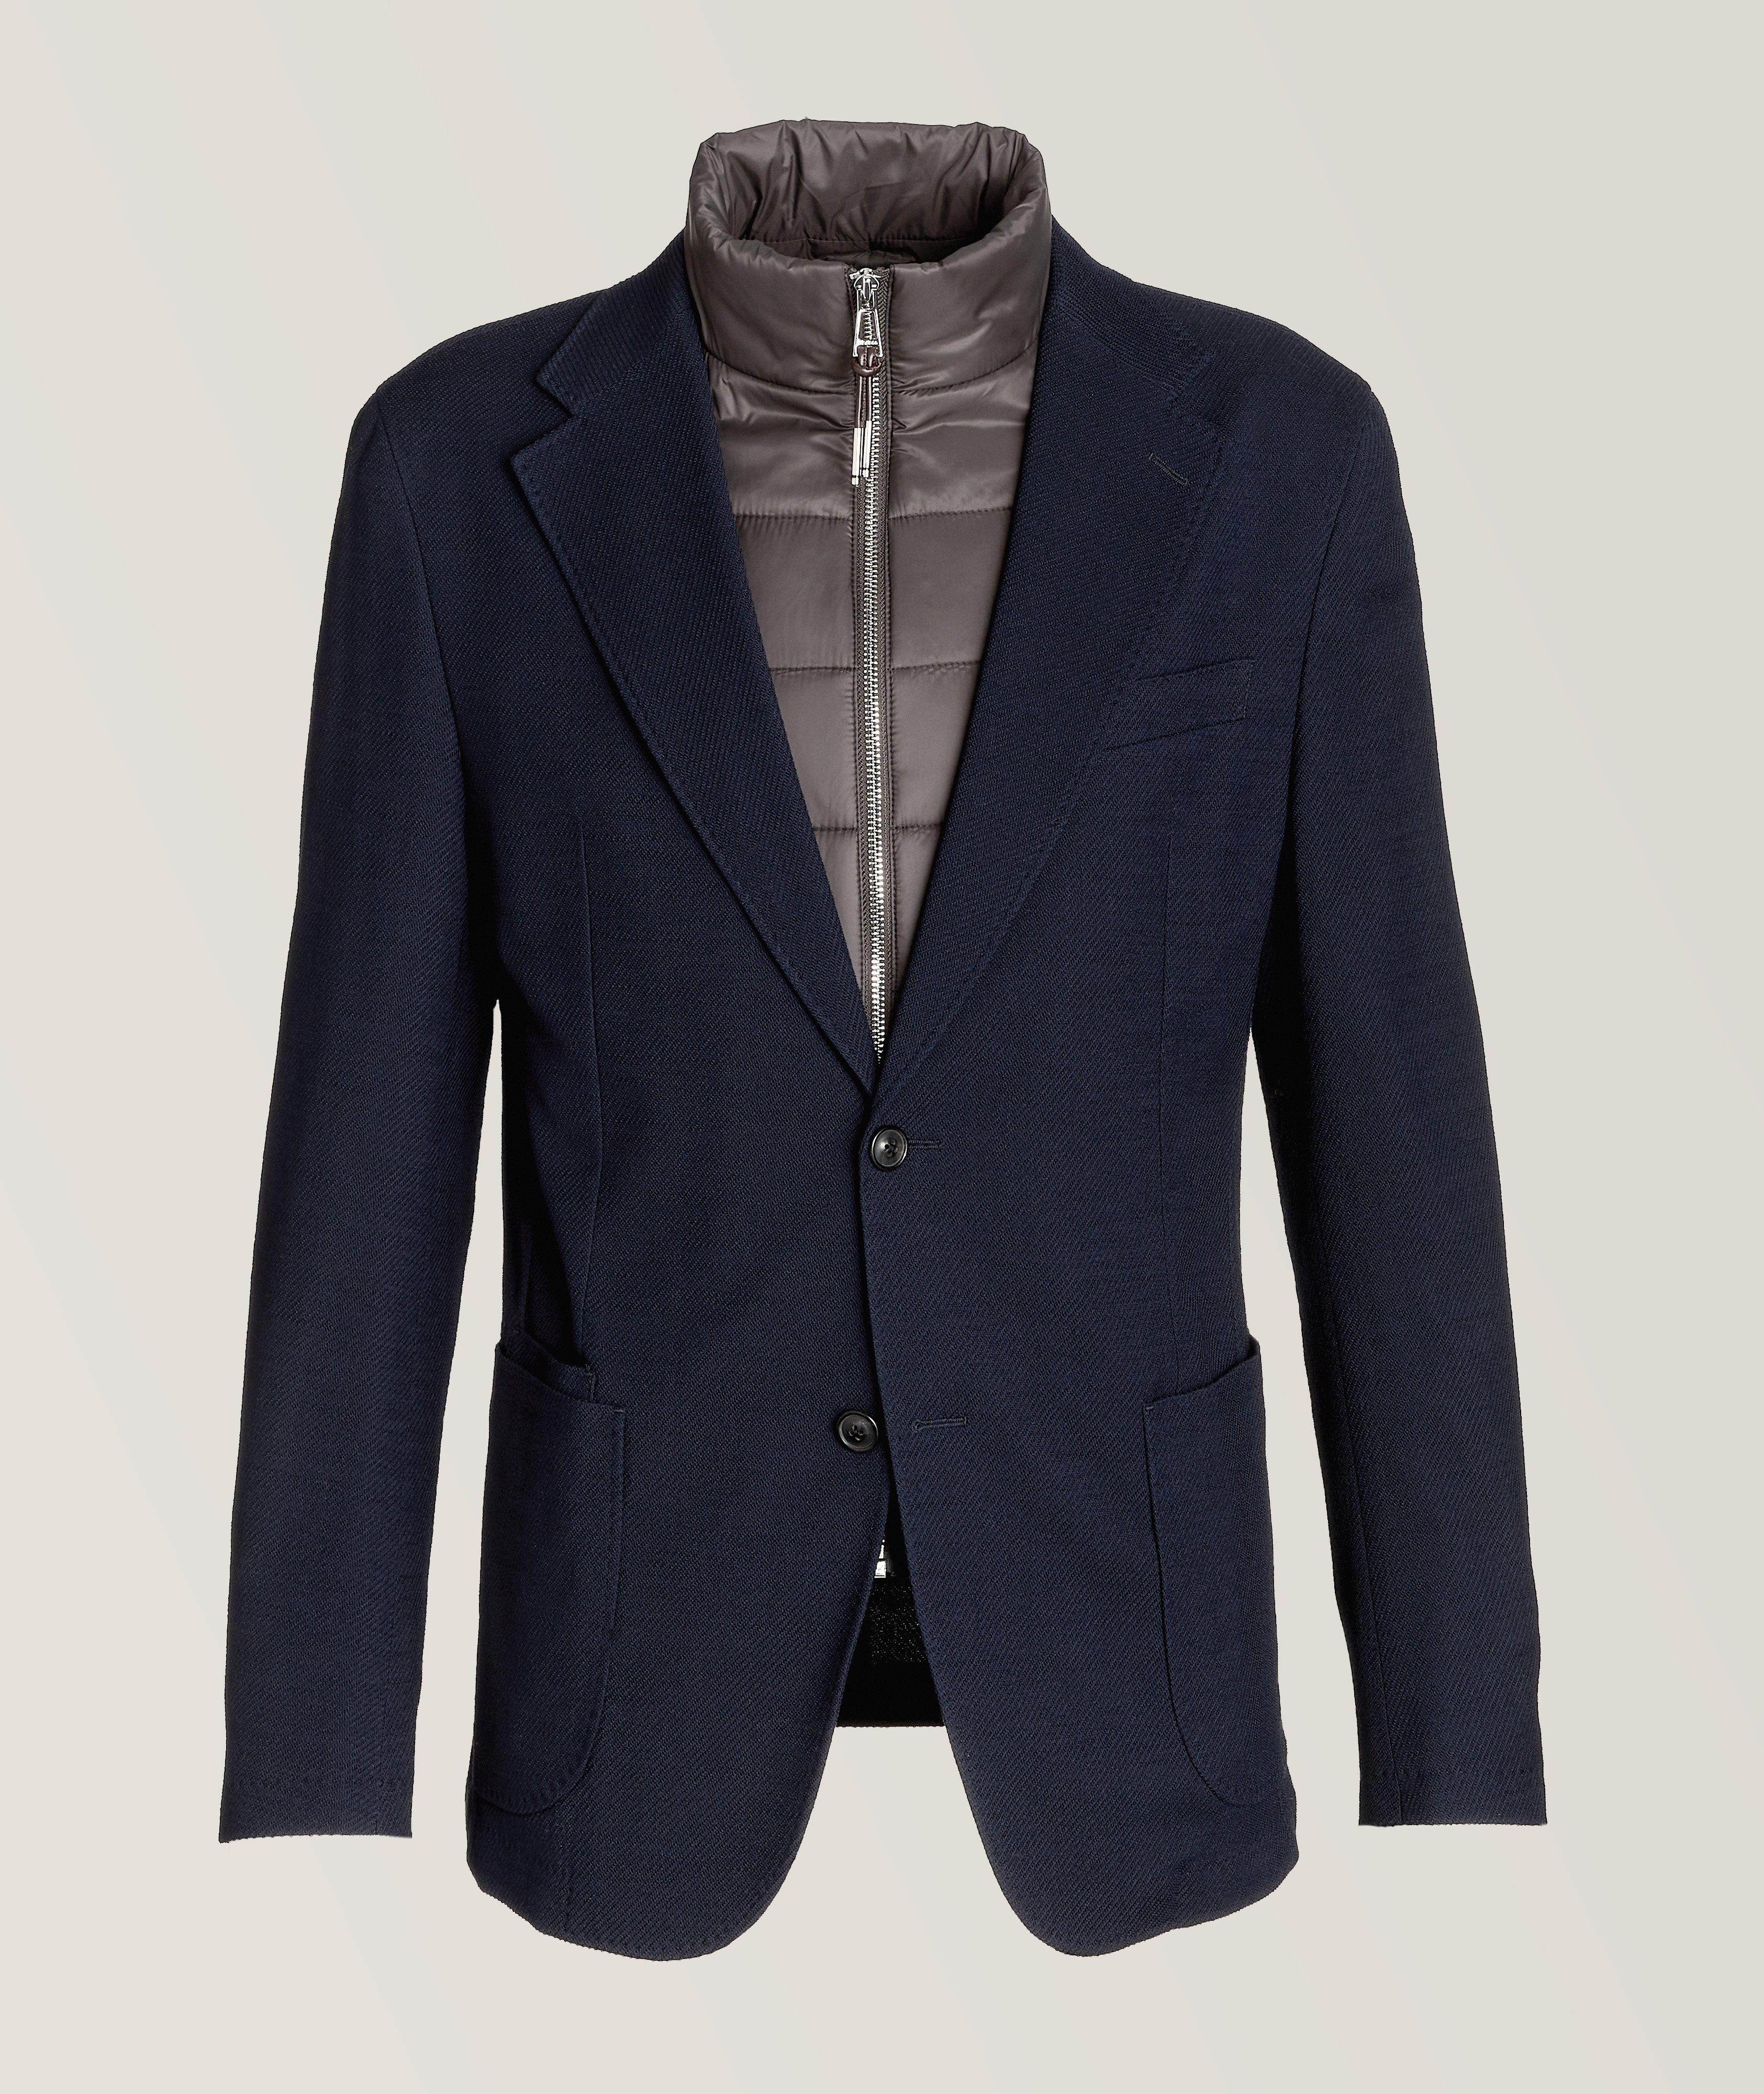 Triest Textured Stretch Wool-Cotton Blend Sport Jacket